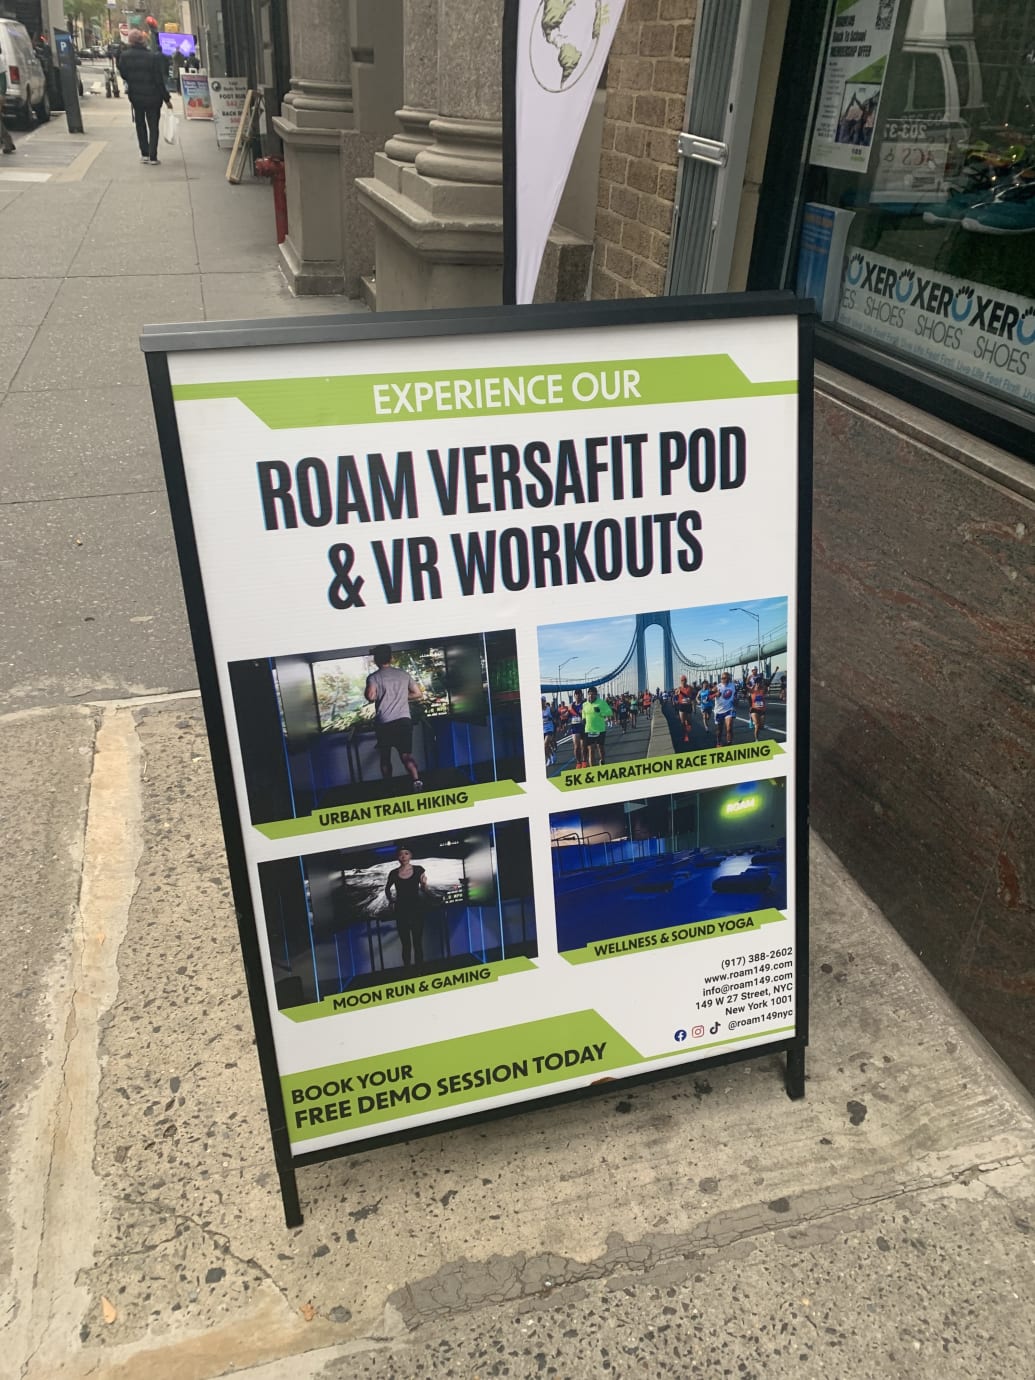 Uma placa do lado de fora do Roam149 anuncia exercícios de pod e VR em ambientes virtuais, incluindo a superfície lunar.